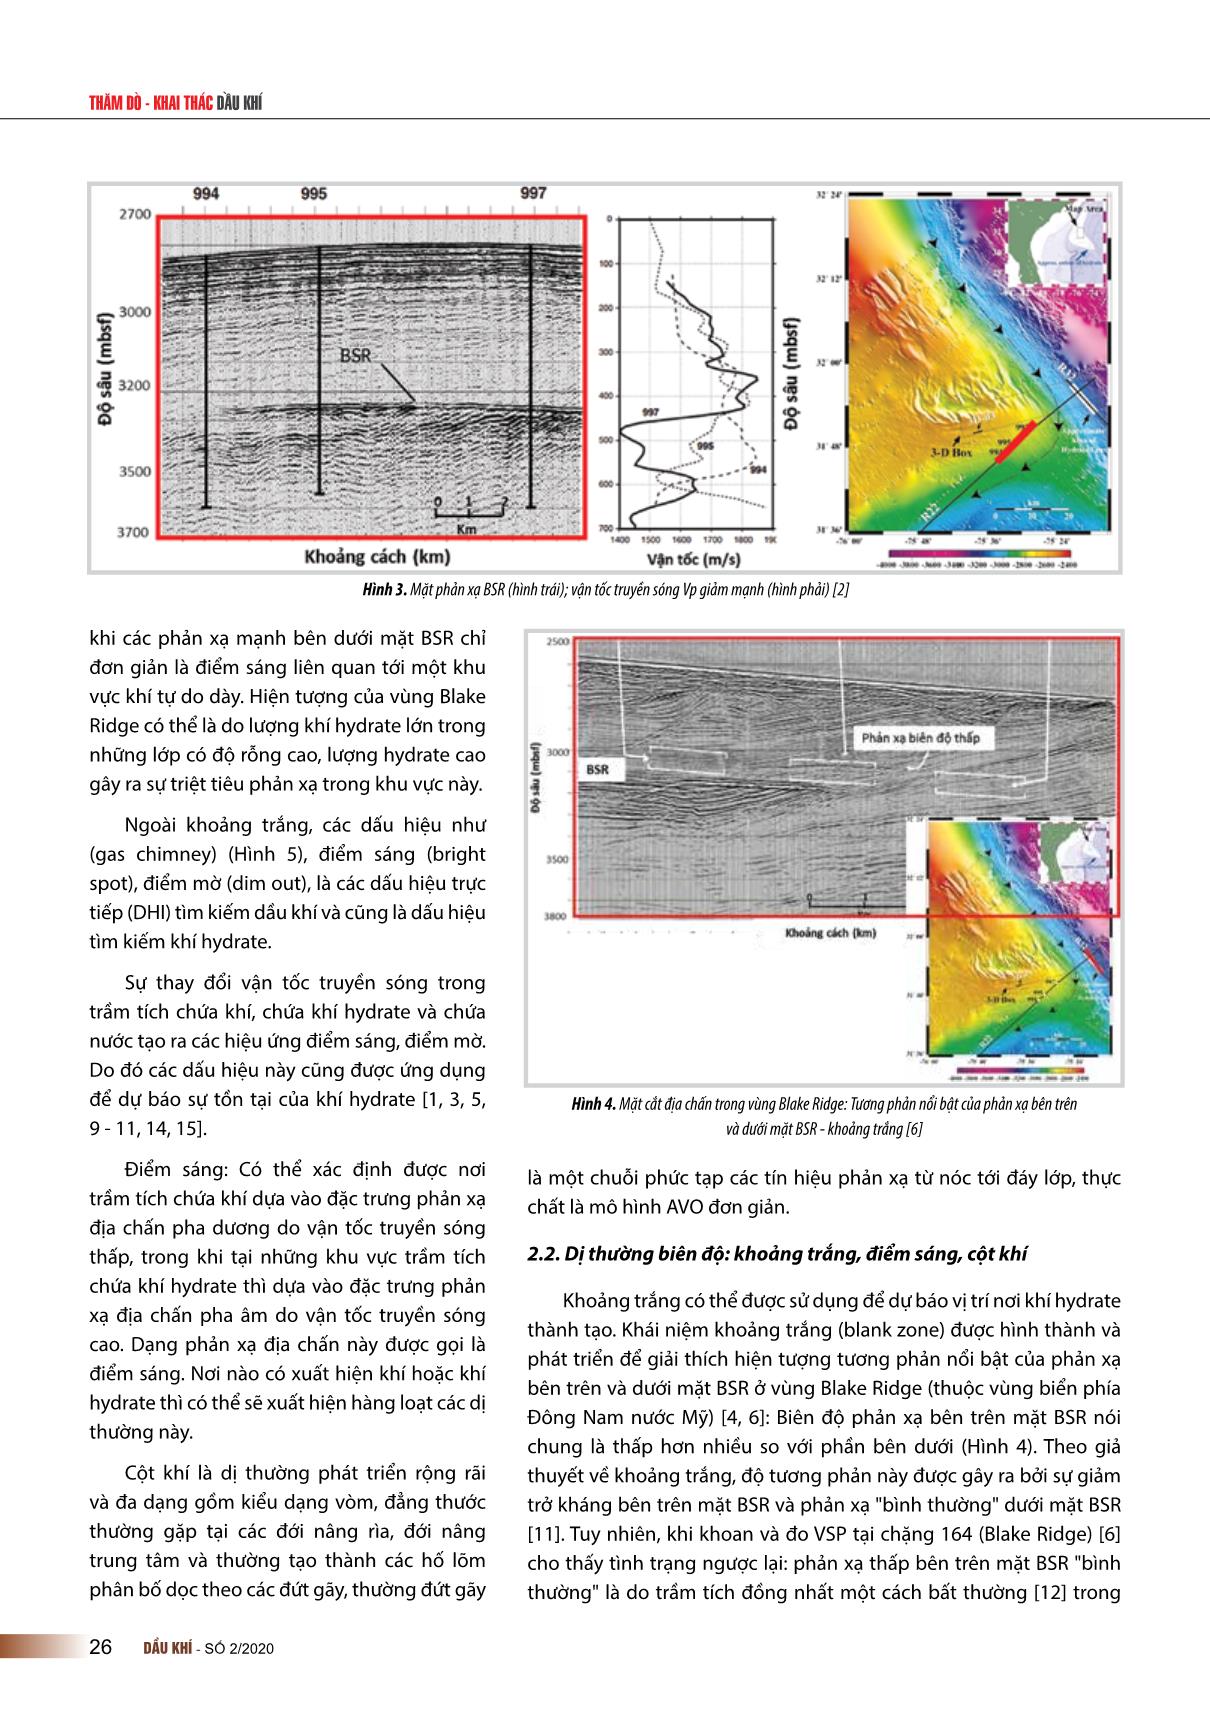 Các dấu hiệu trực tiếp dự báo sự tồn tại của khí hydrate từ tài liệu địa chấn trên khu vực nước sâu thềm lục địa Việt Nam trang 3